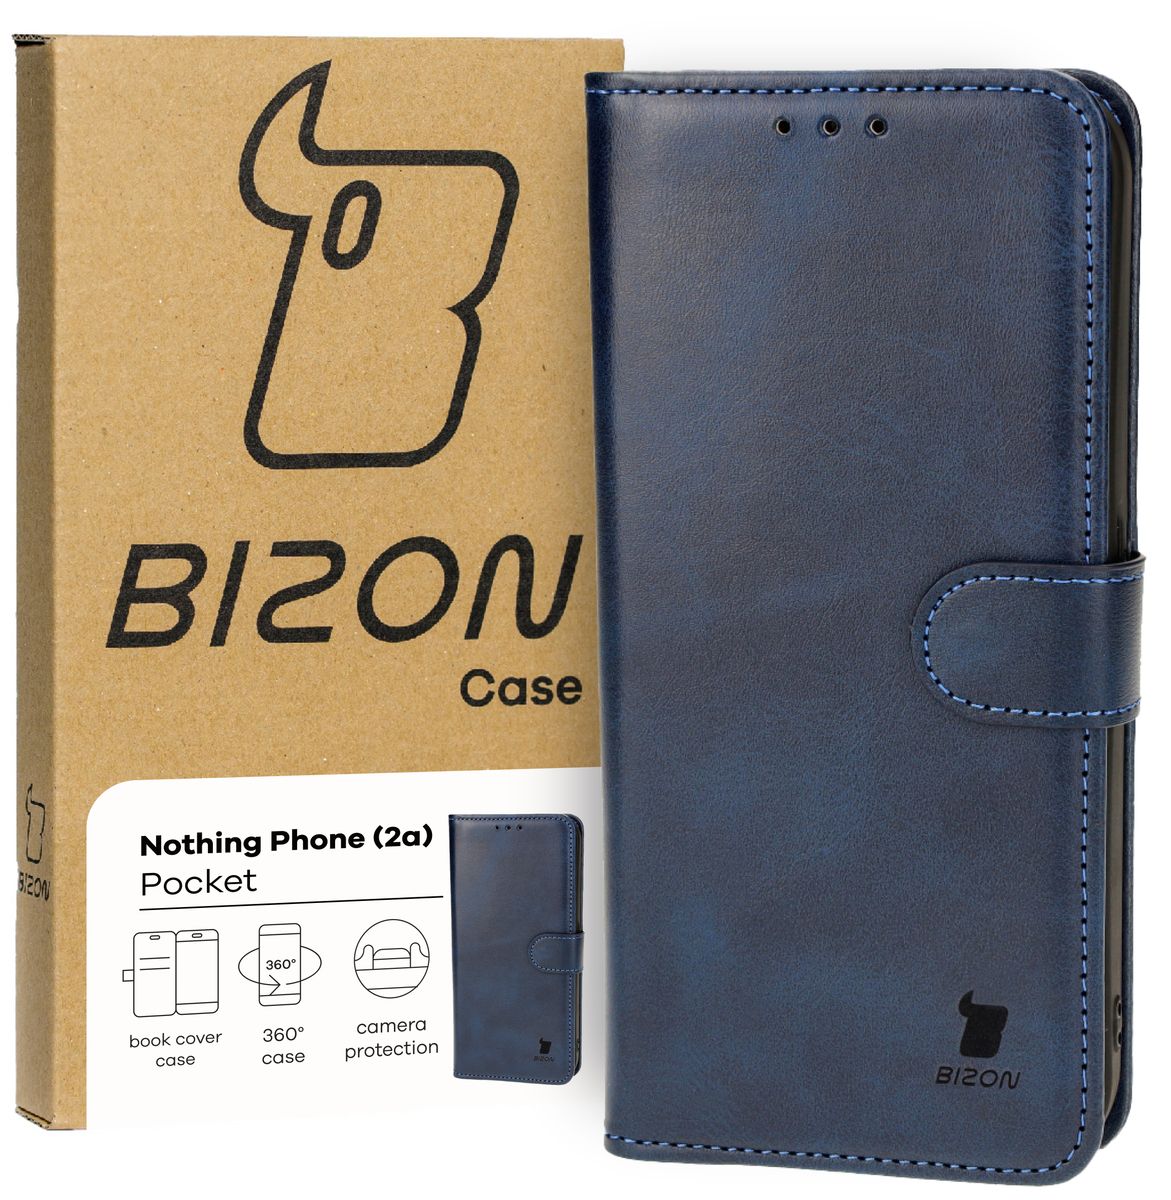 Schutzhülle für Nothing Phone (2a), Bizon Case Pocket, Dunkelblau